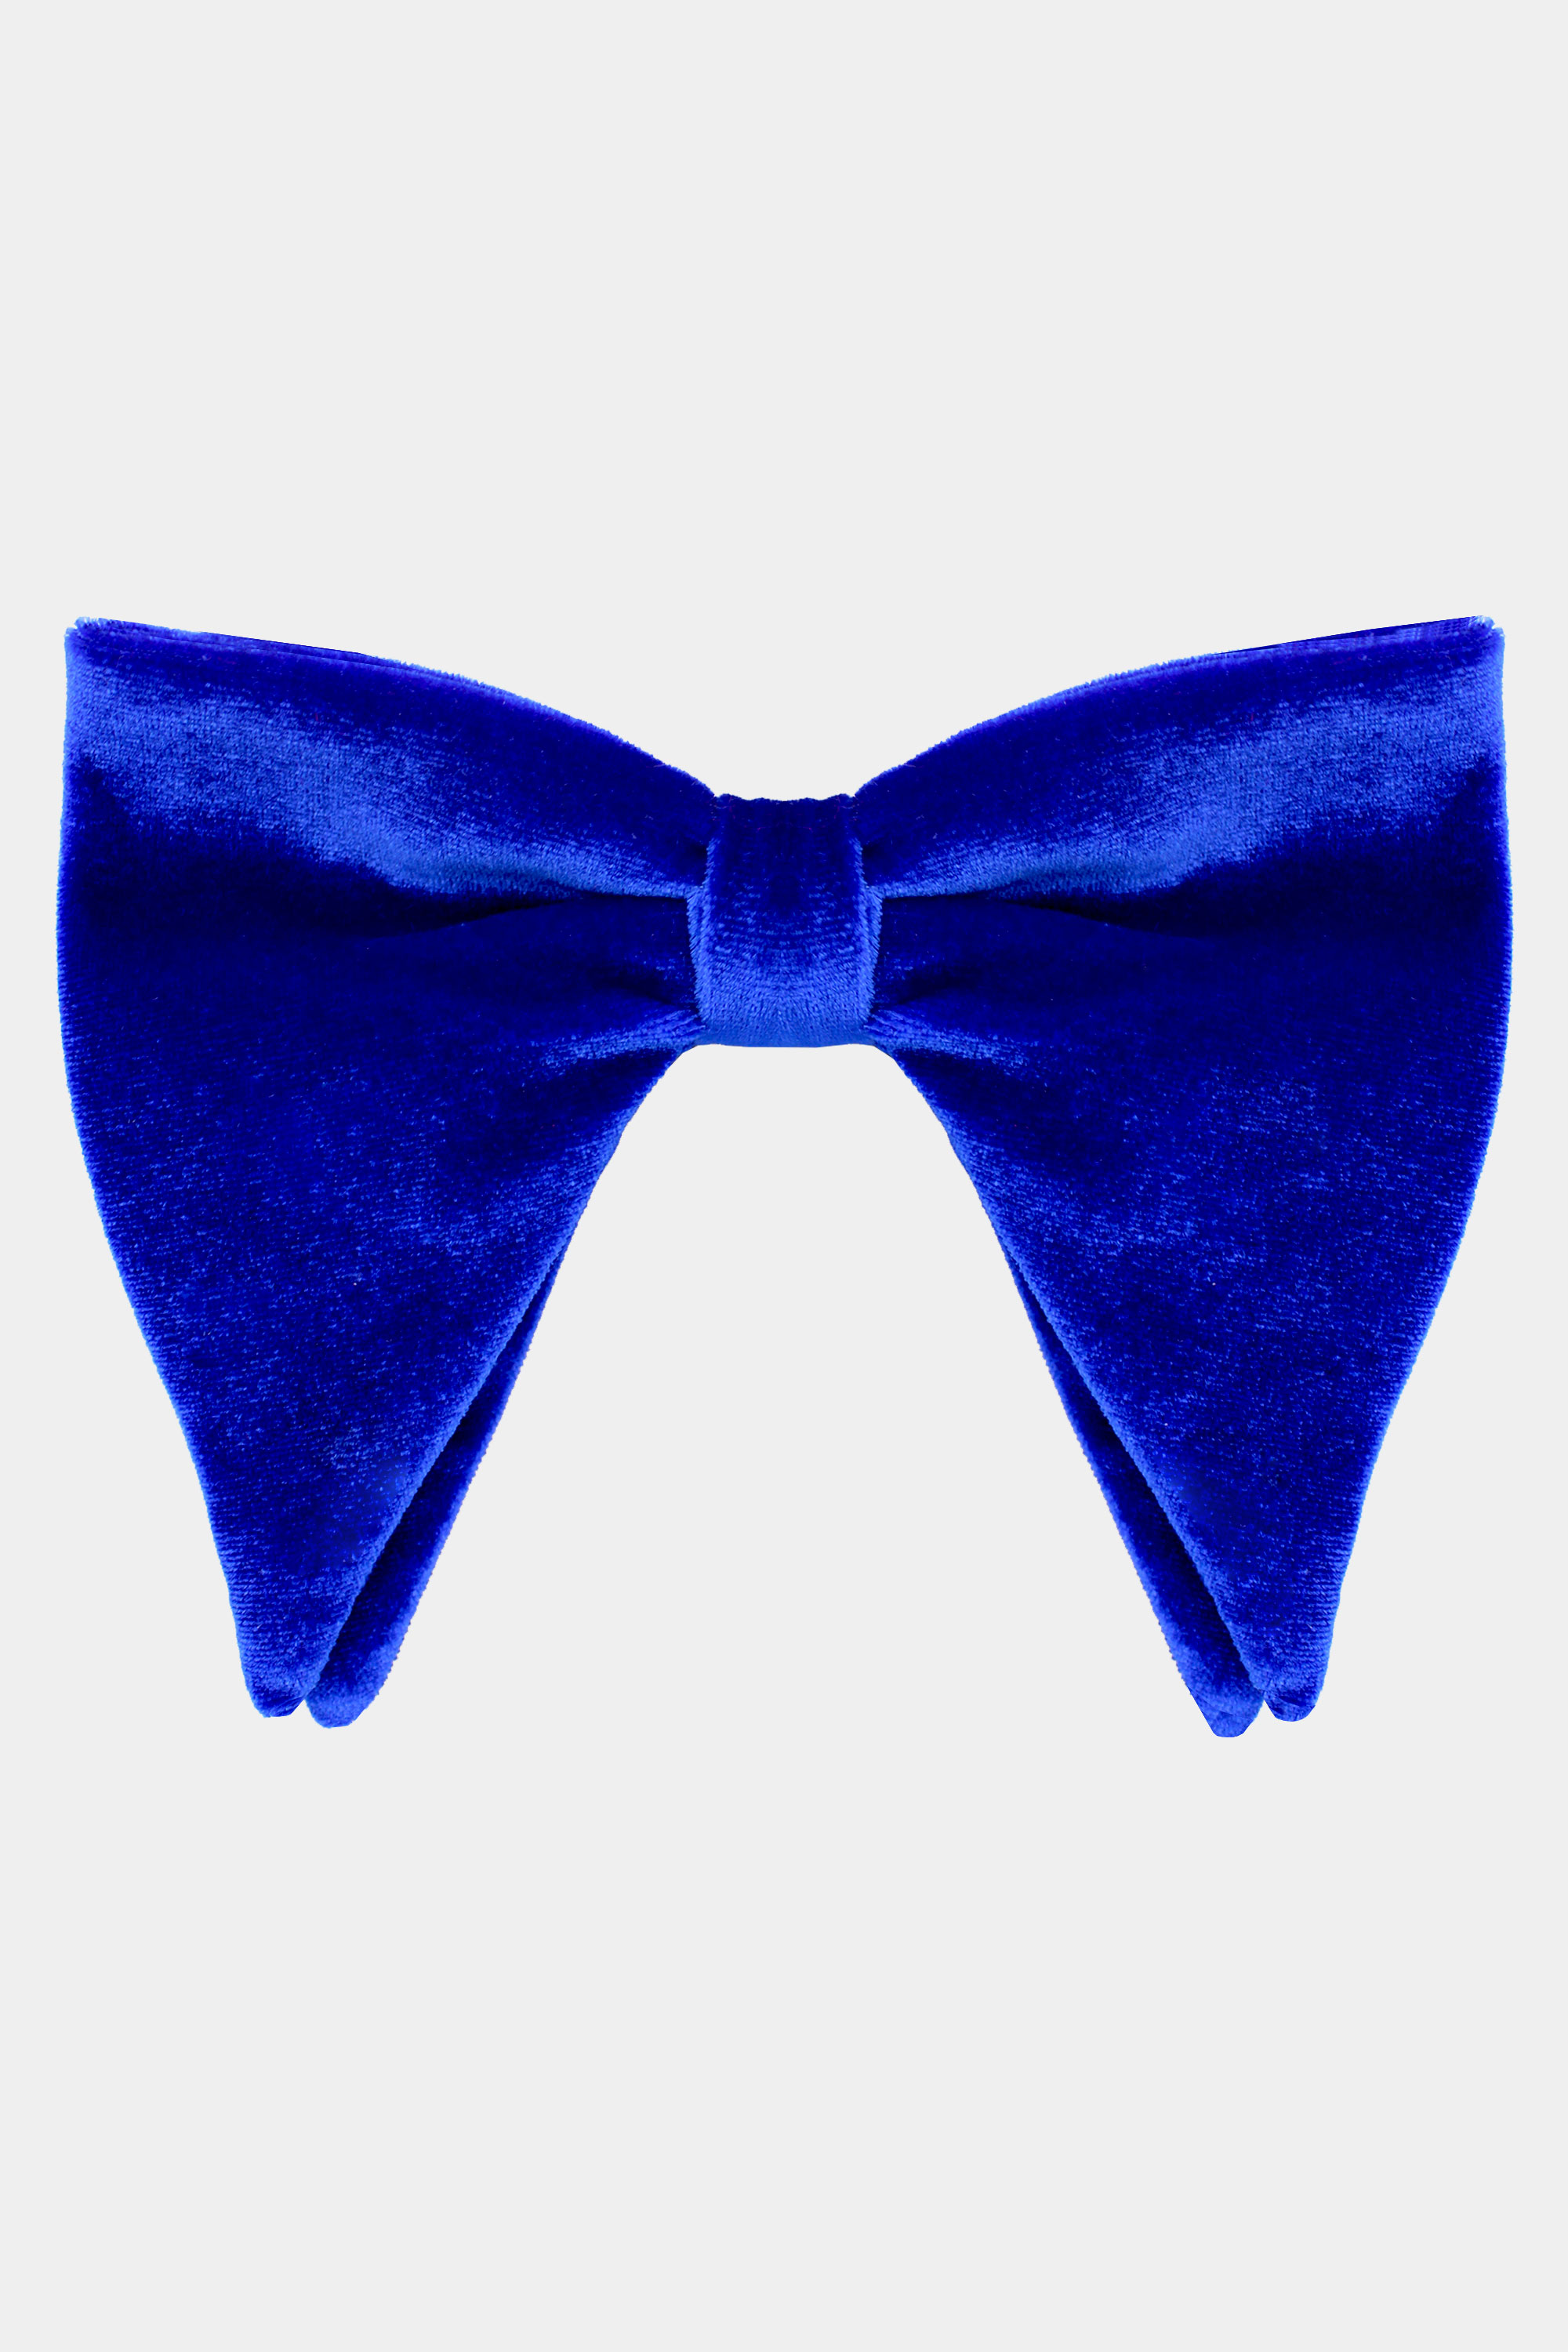 Oversized-Blue-Bow-Tie-Groom-Tuxedo-Bowtie-from-Gentlemansguru.com